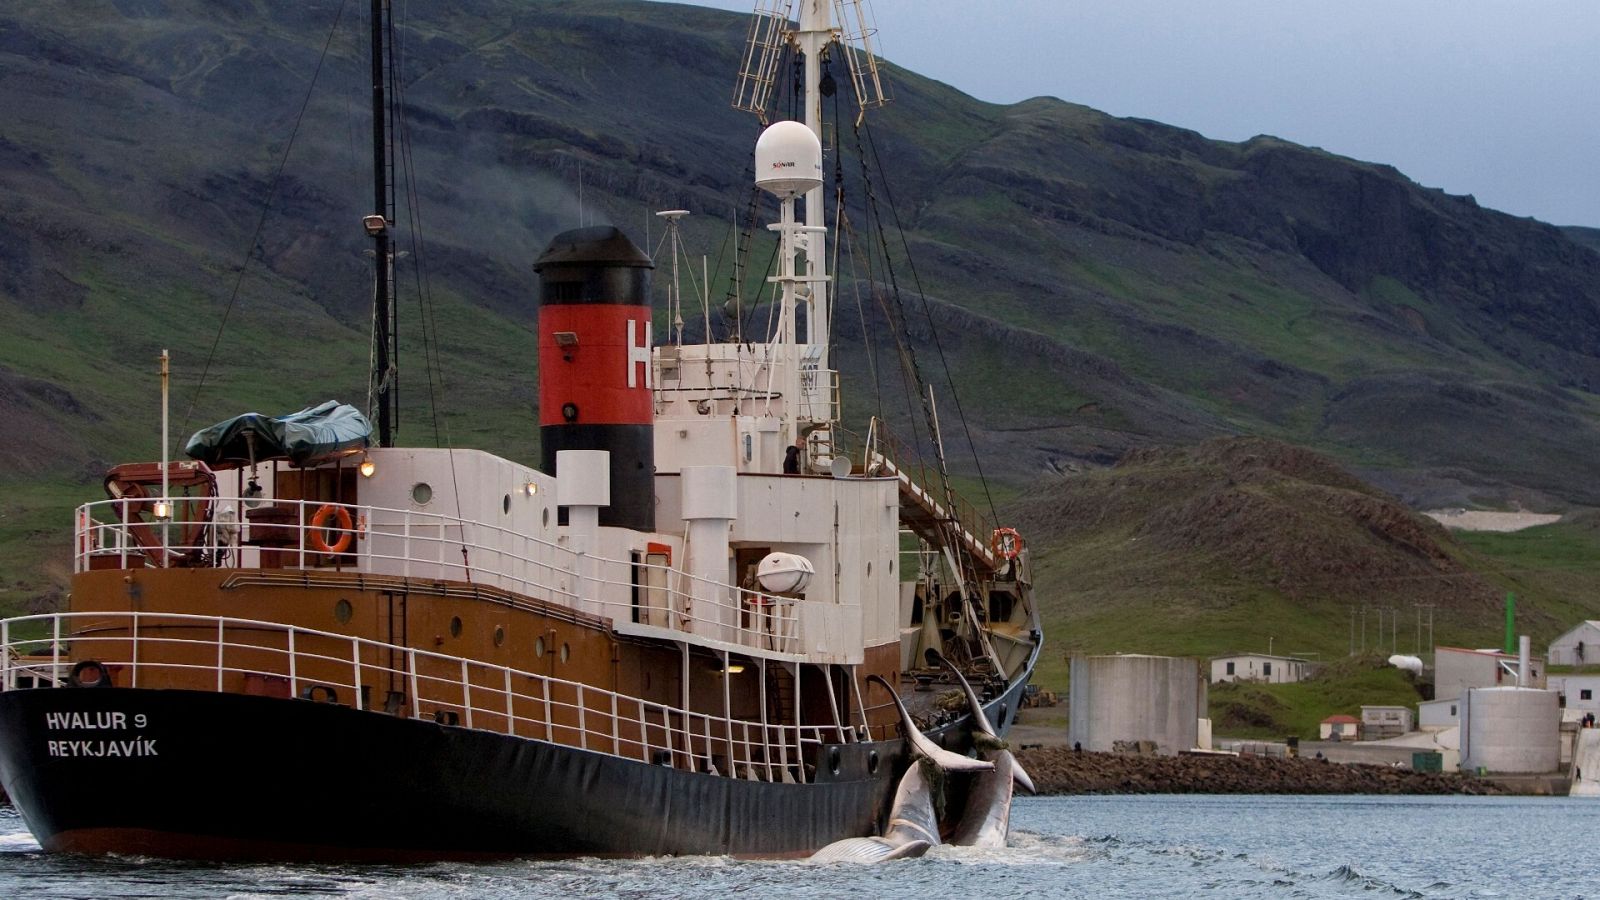 Un barco ballenero lleva dos rorcuales comunes a su base en Hvalfjordur, Islandia 19 de junio de 2009